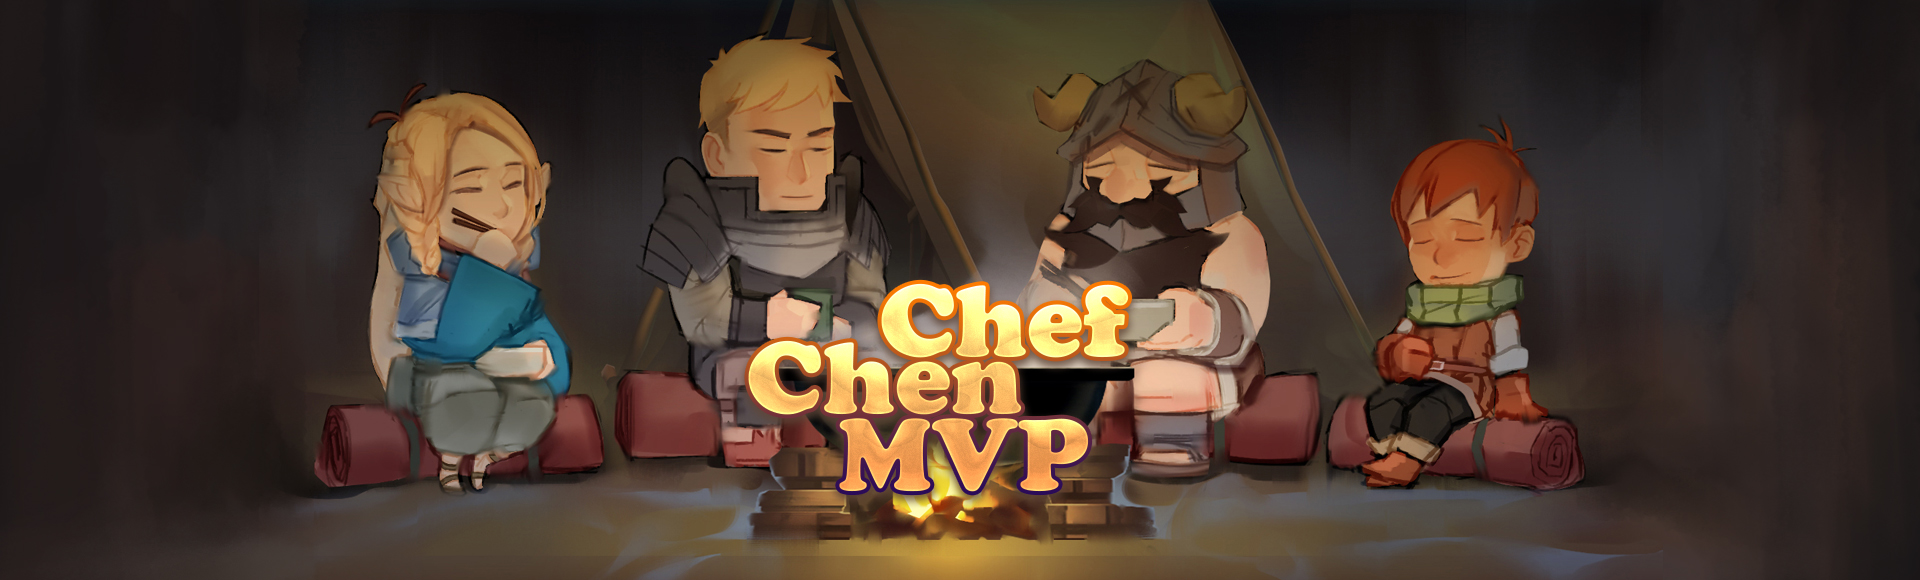 Chef Chen MVP